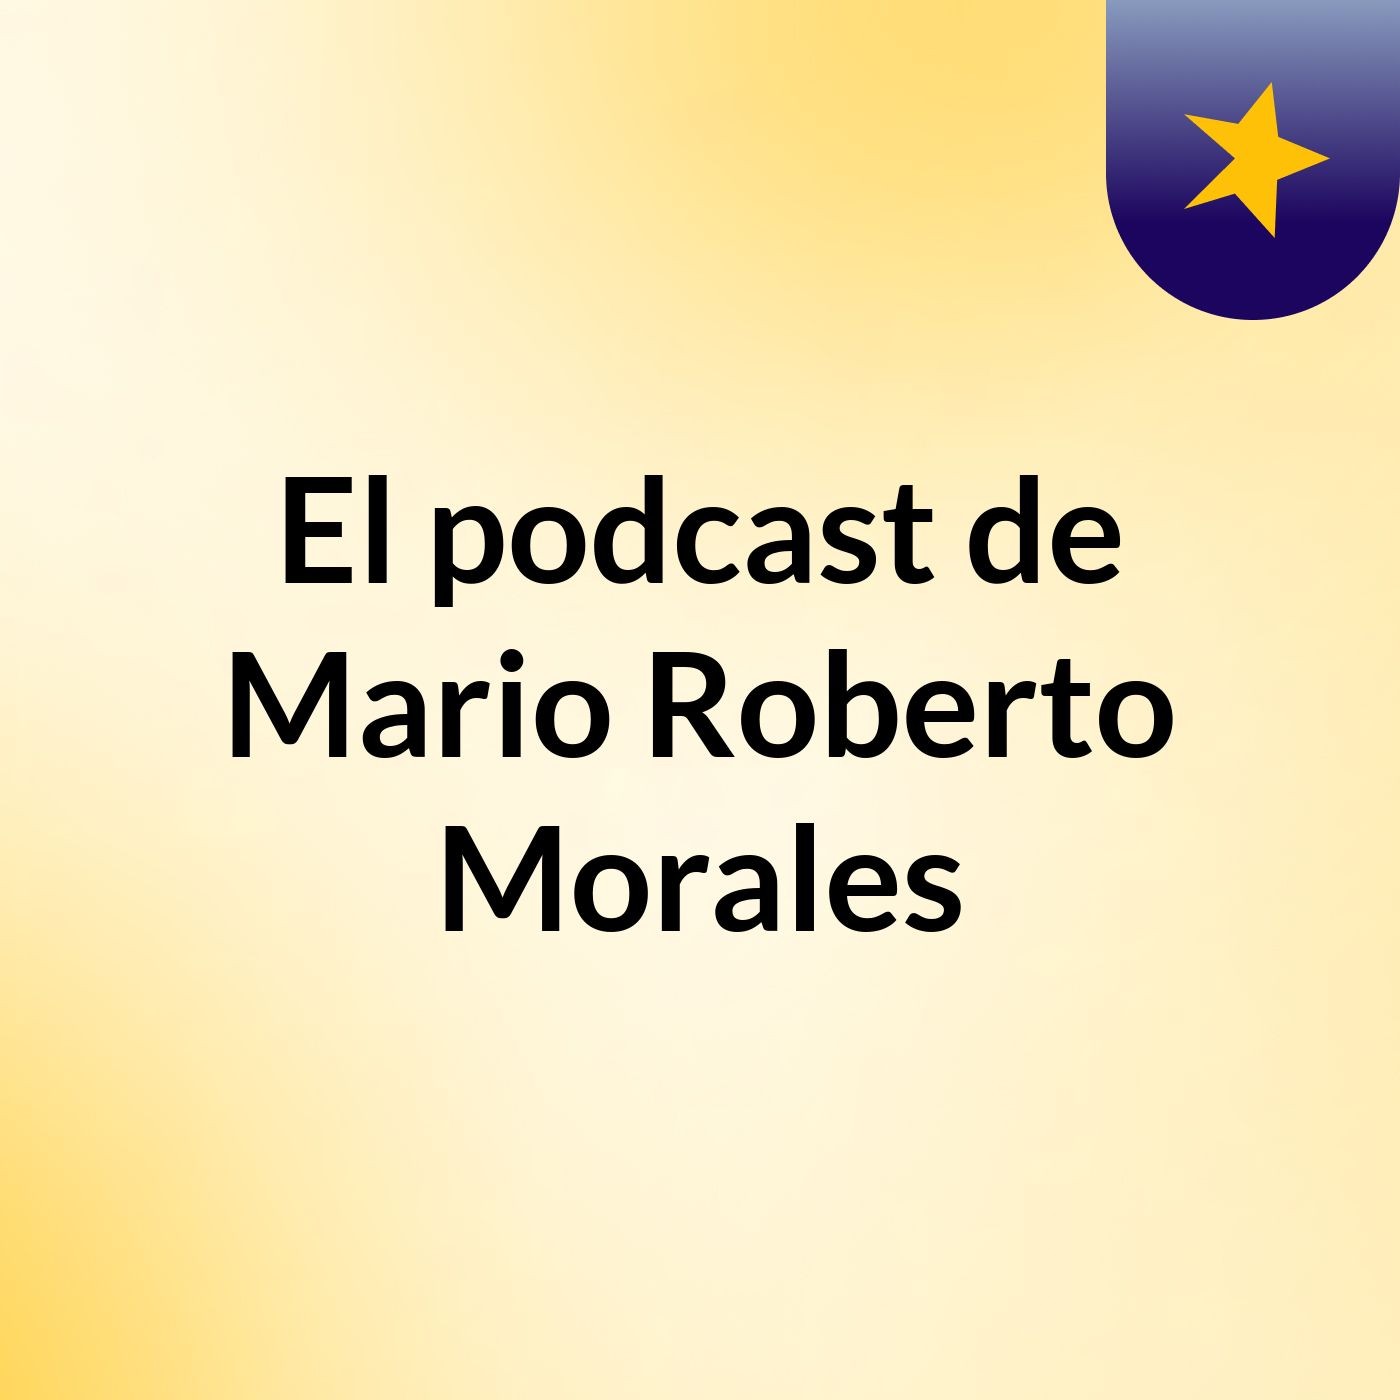 Episodio 3 - El podcast de Mario Roberto Morales